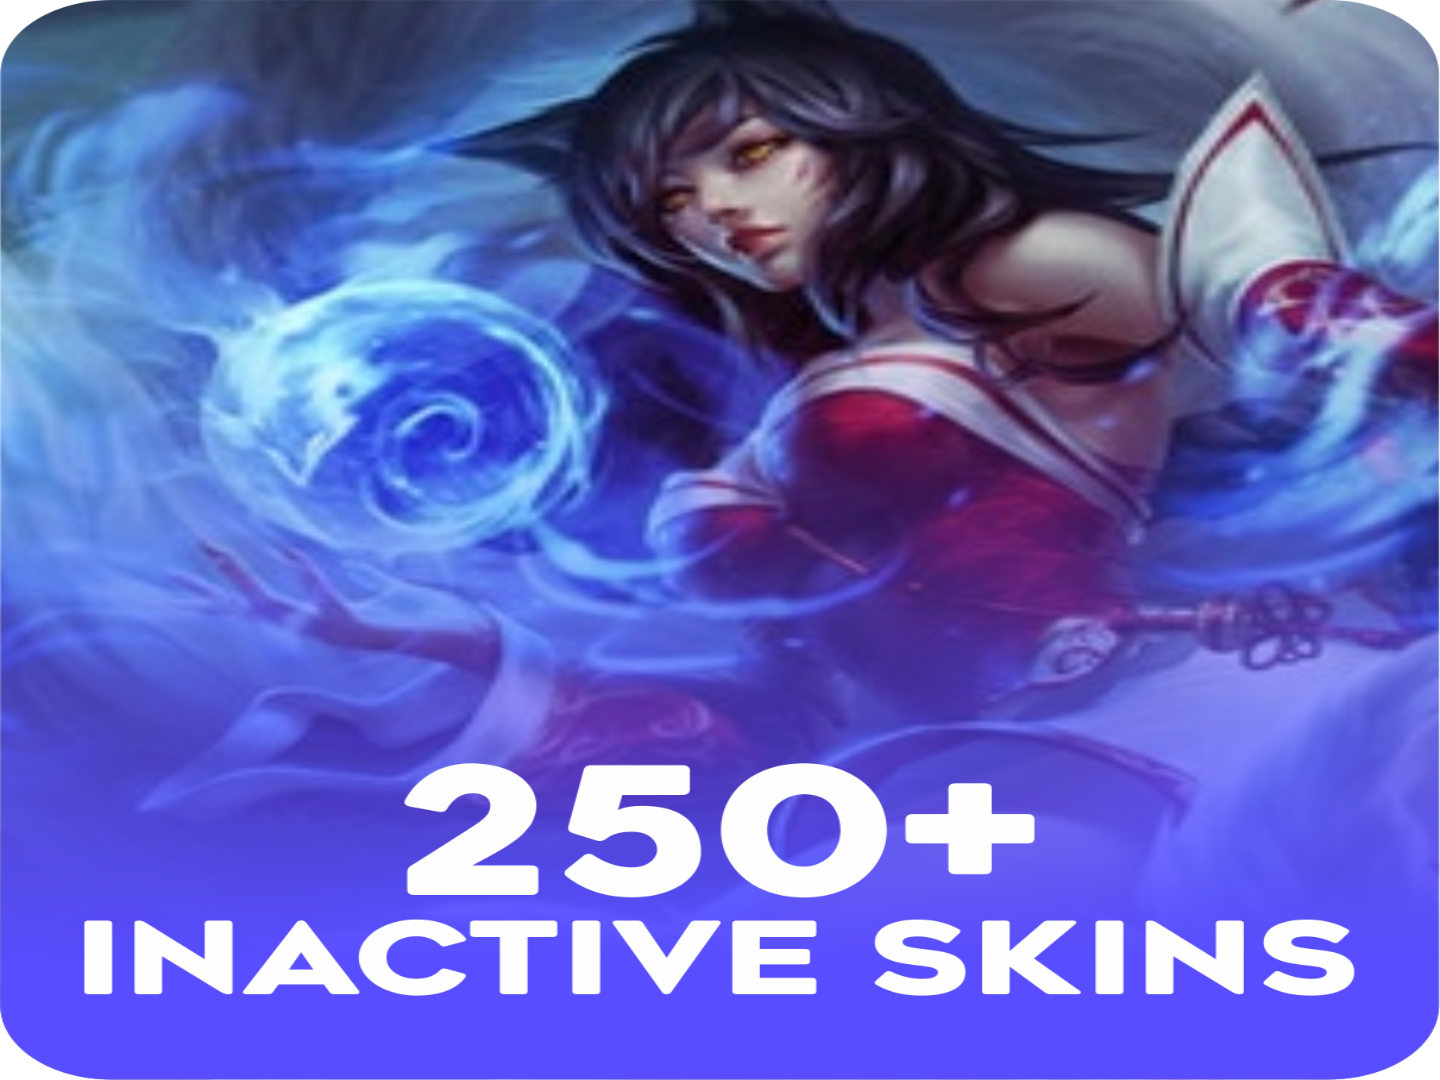 Inactive 250 skins+ Account